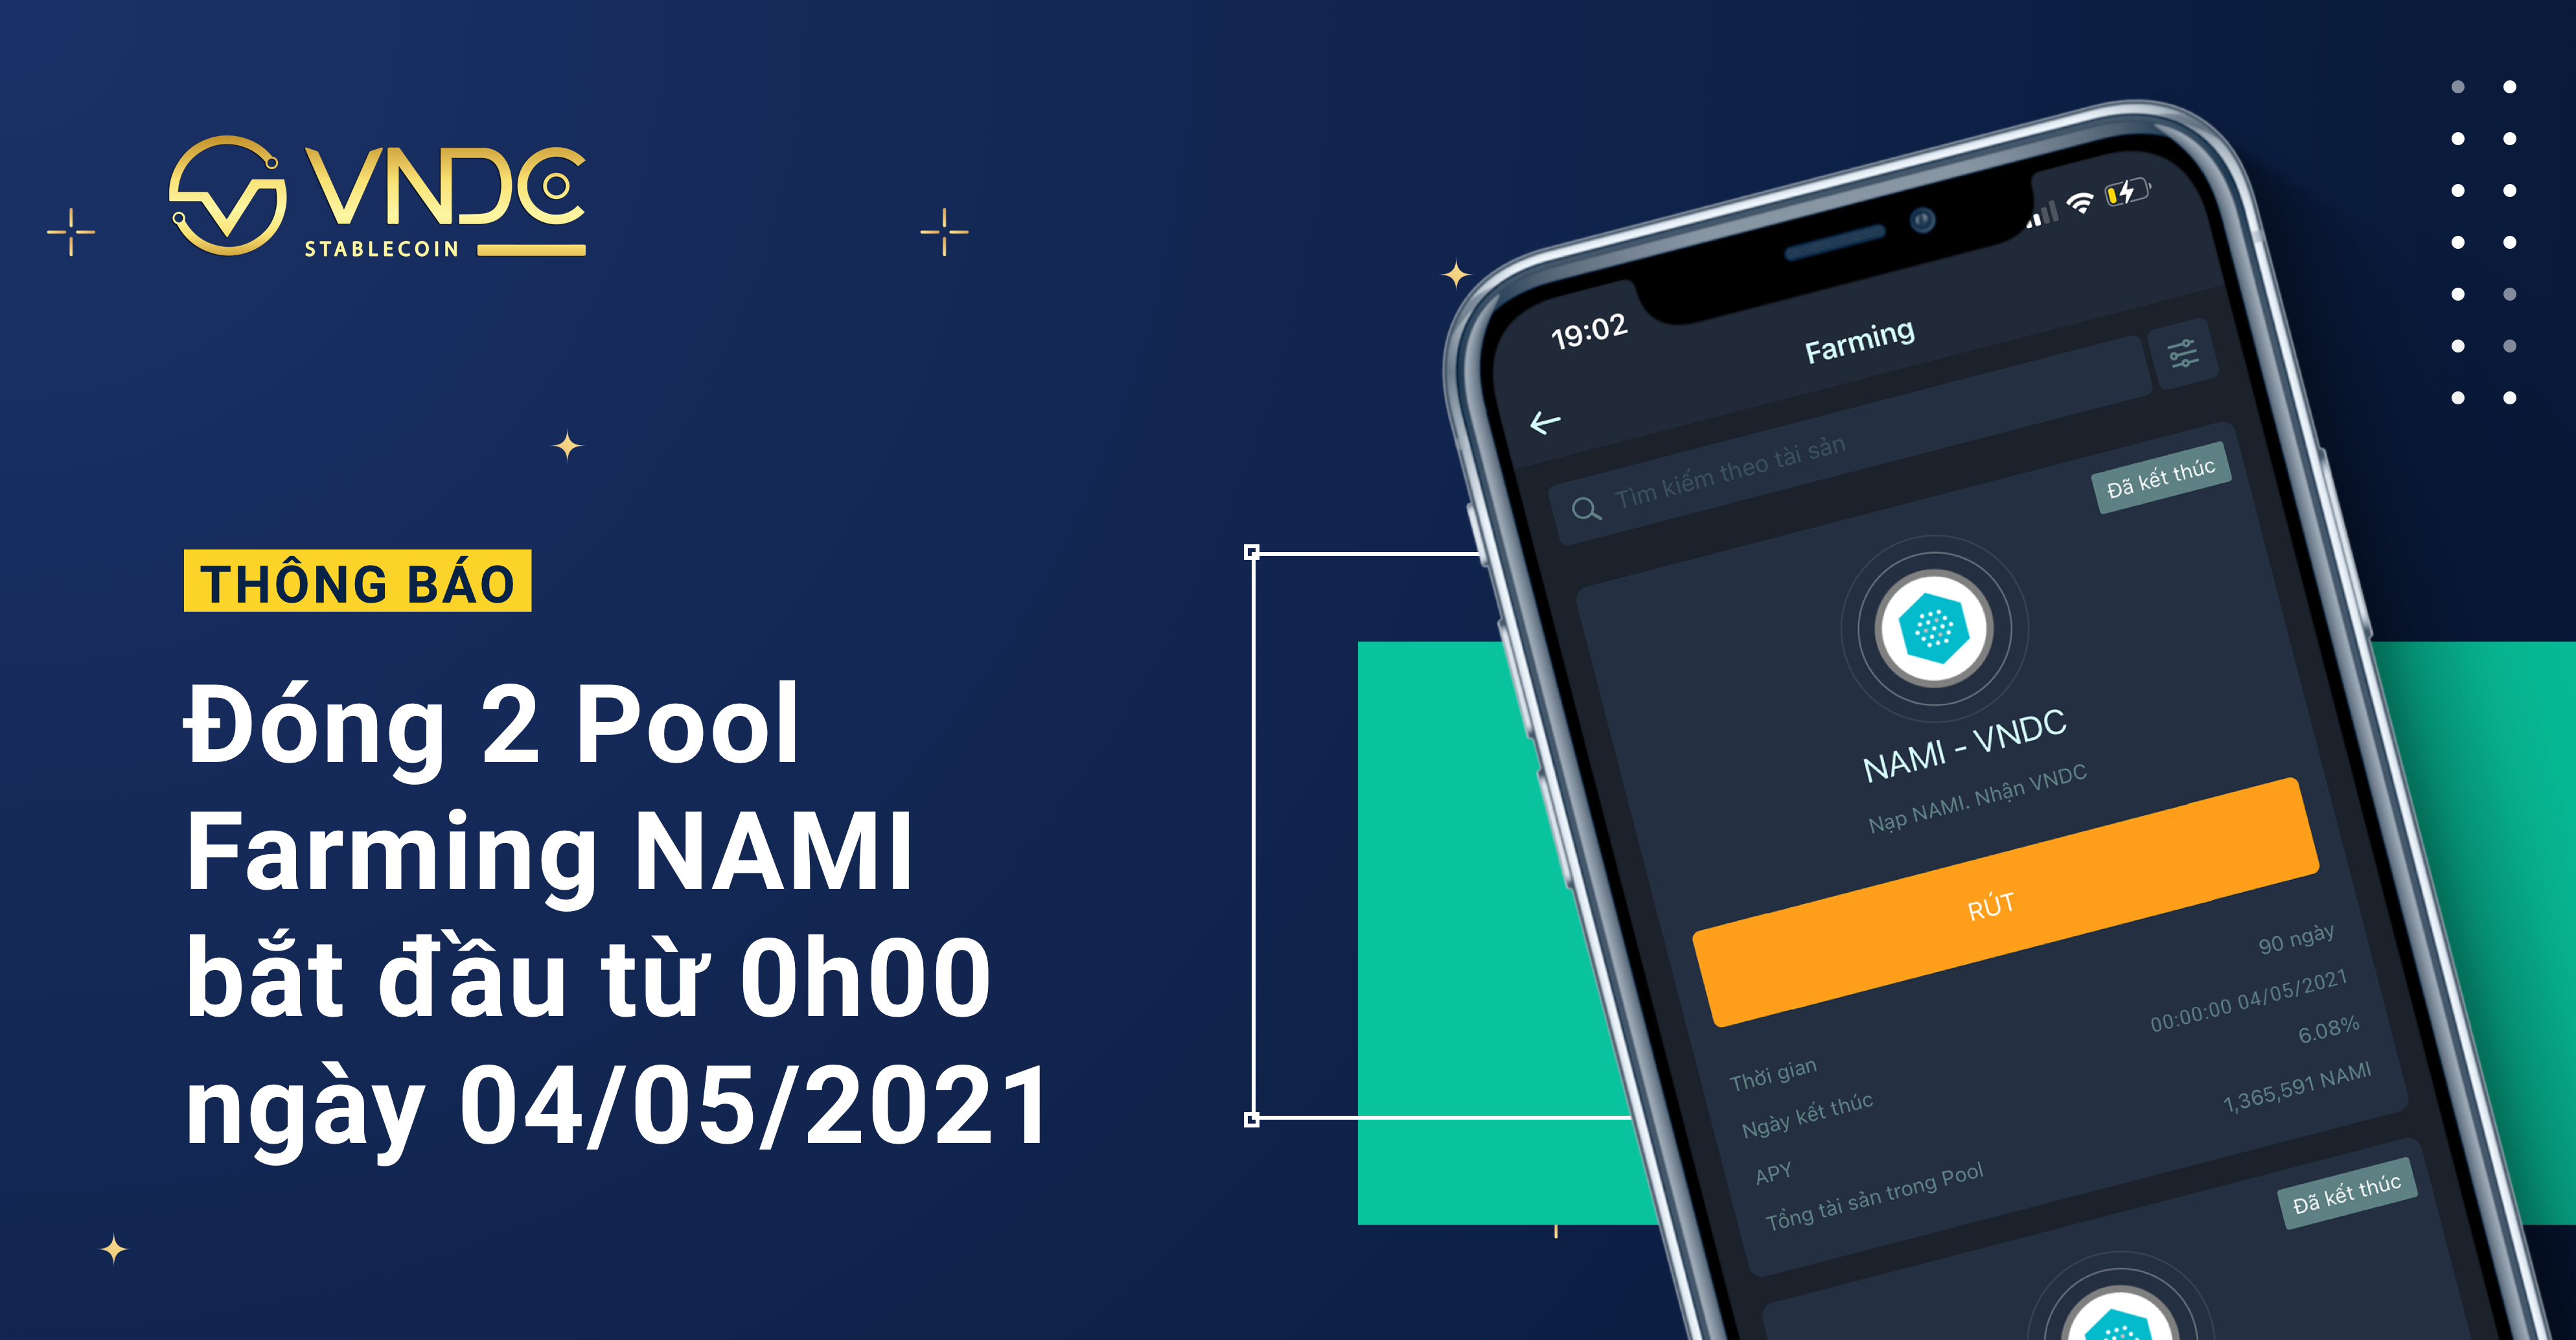 Thông báo: Đóng 2 Pool Farming NAMI bắt đầu từ 0h00 ngày 04/05/2021